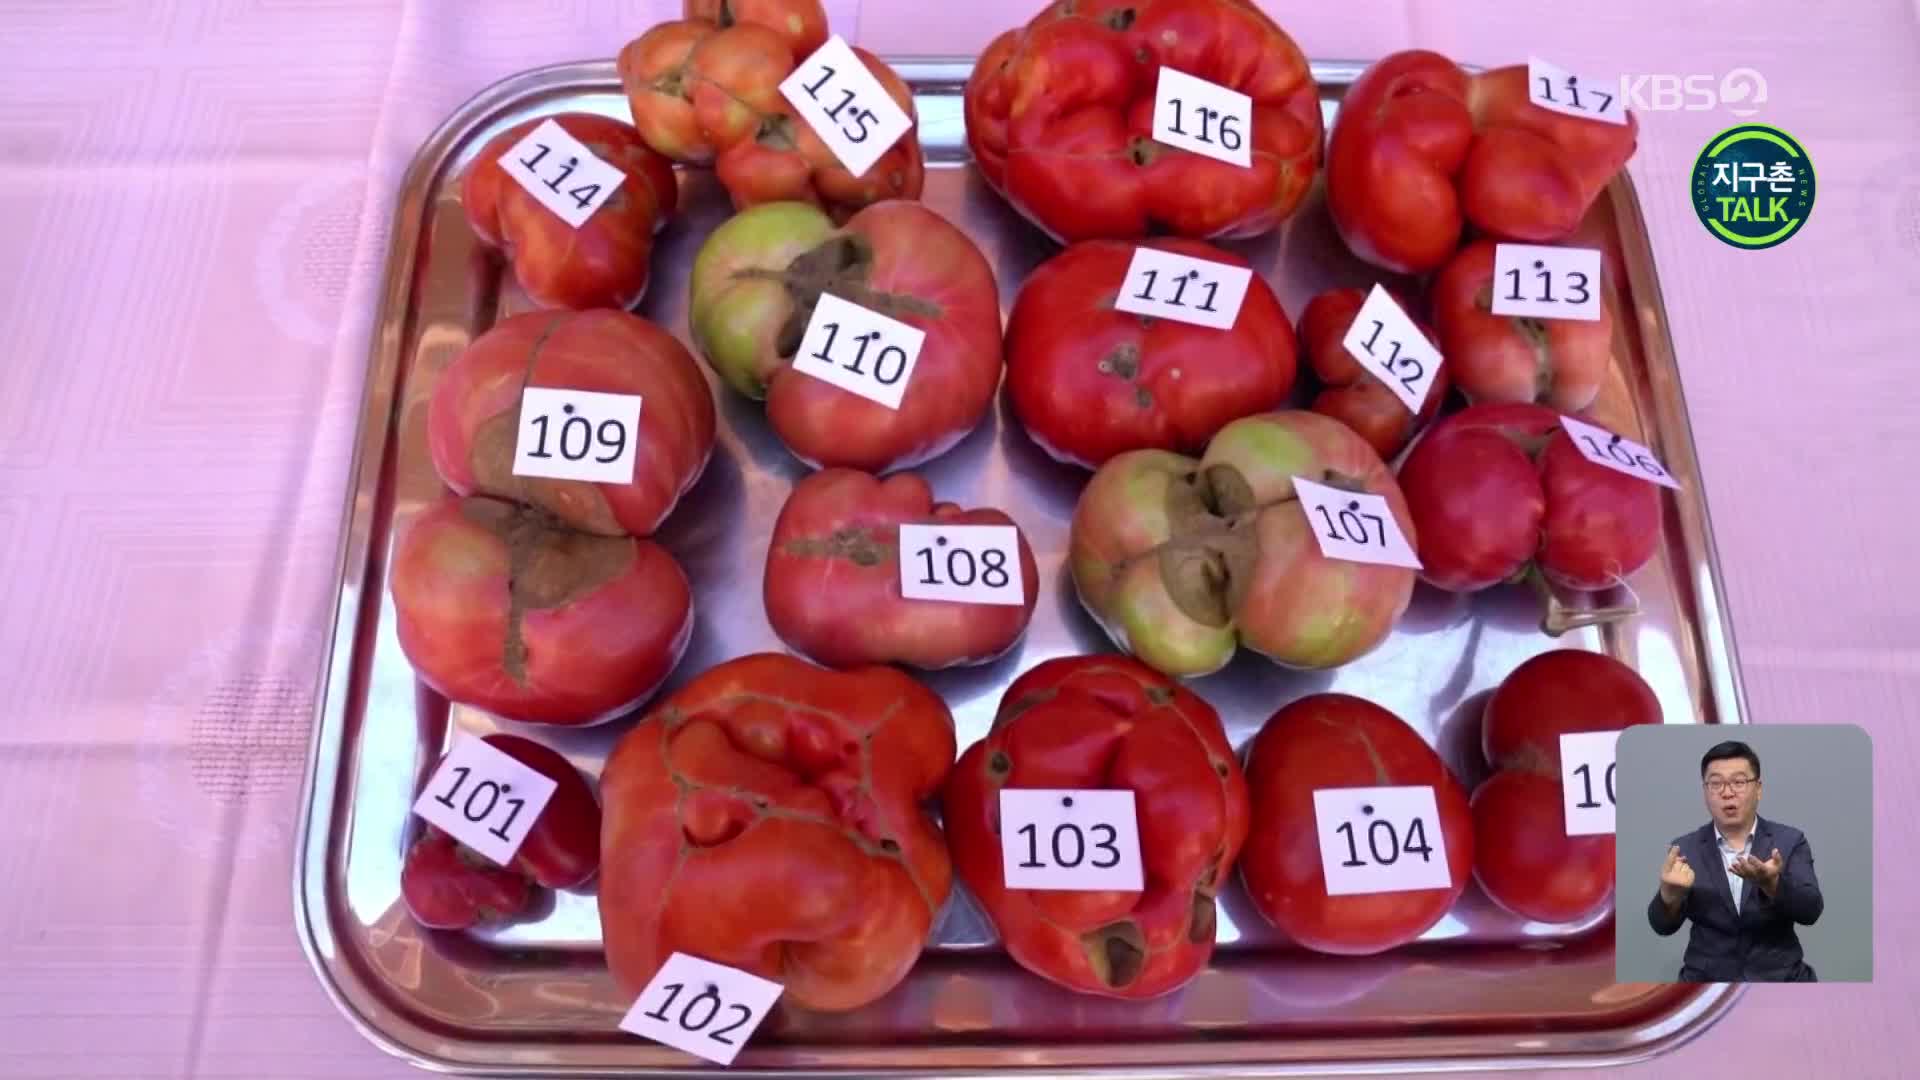 [지구촌 Talk] ‘가장 못생긴 토마토’ 선발대회